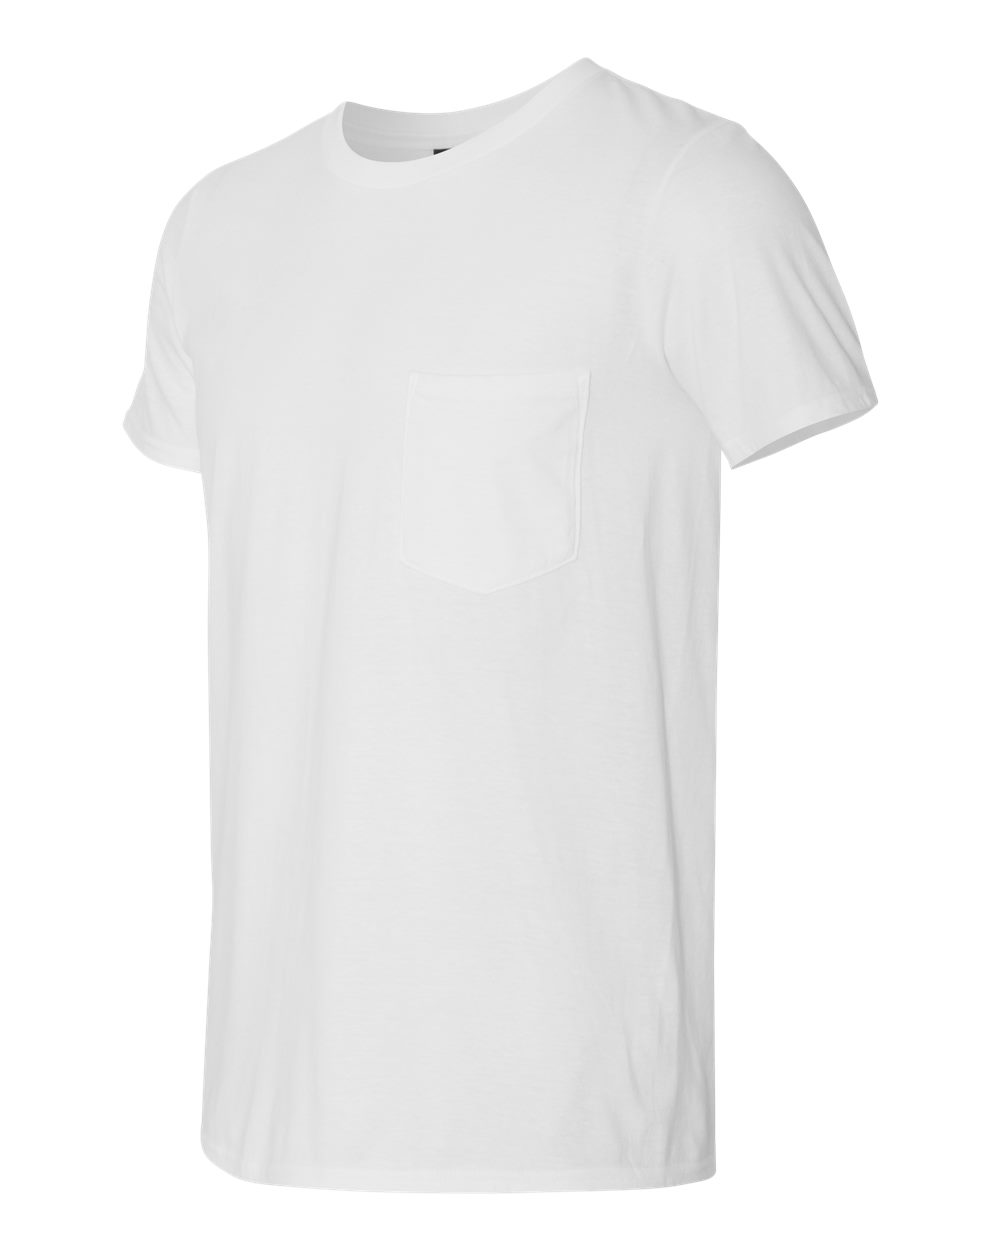 Anvil 983 - Lightweight Pocket T-Shirt